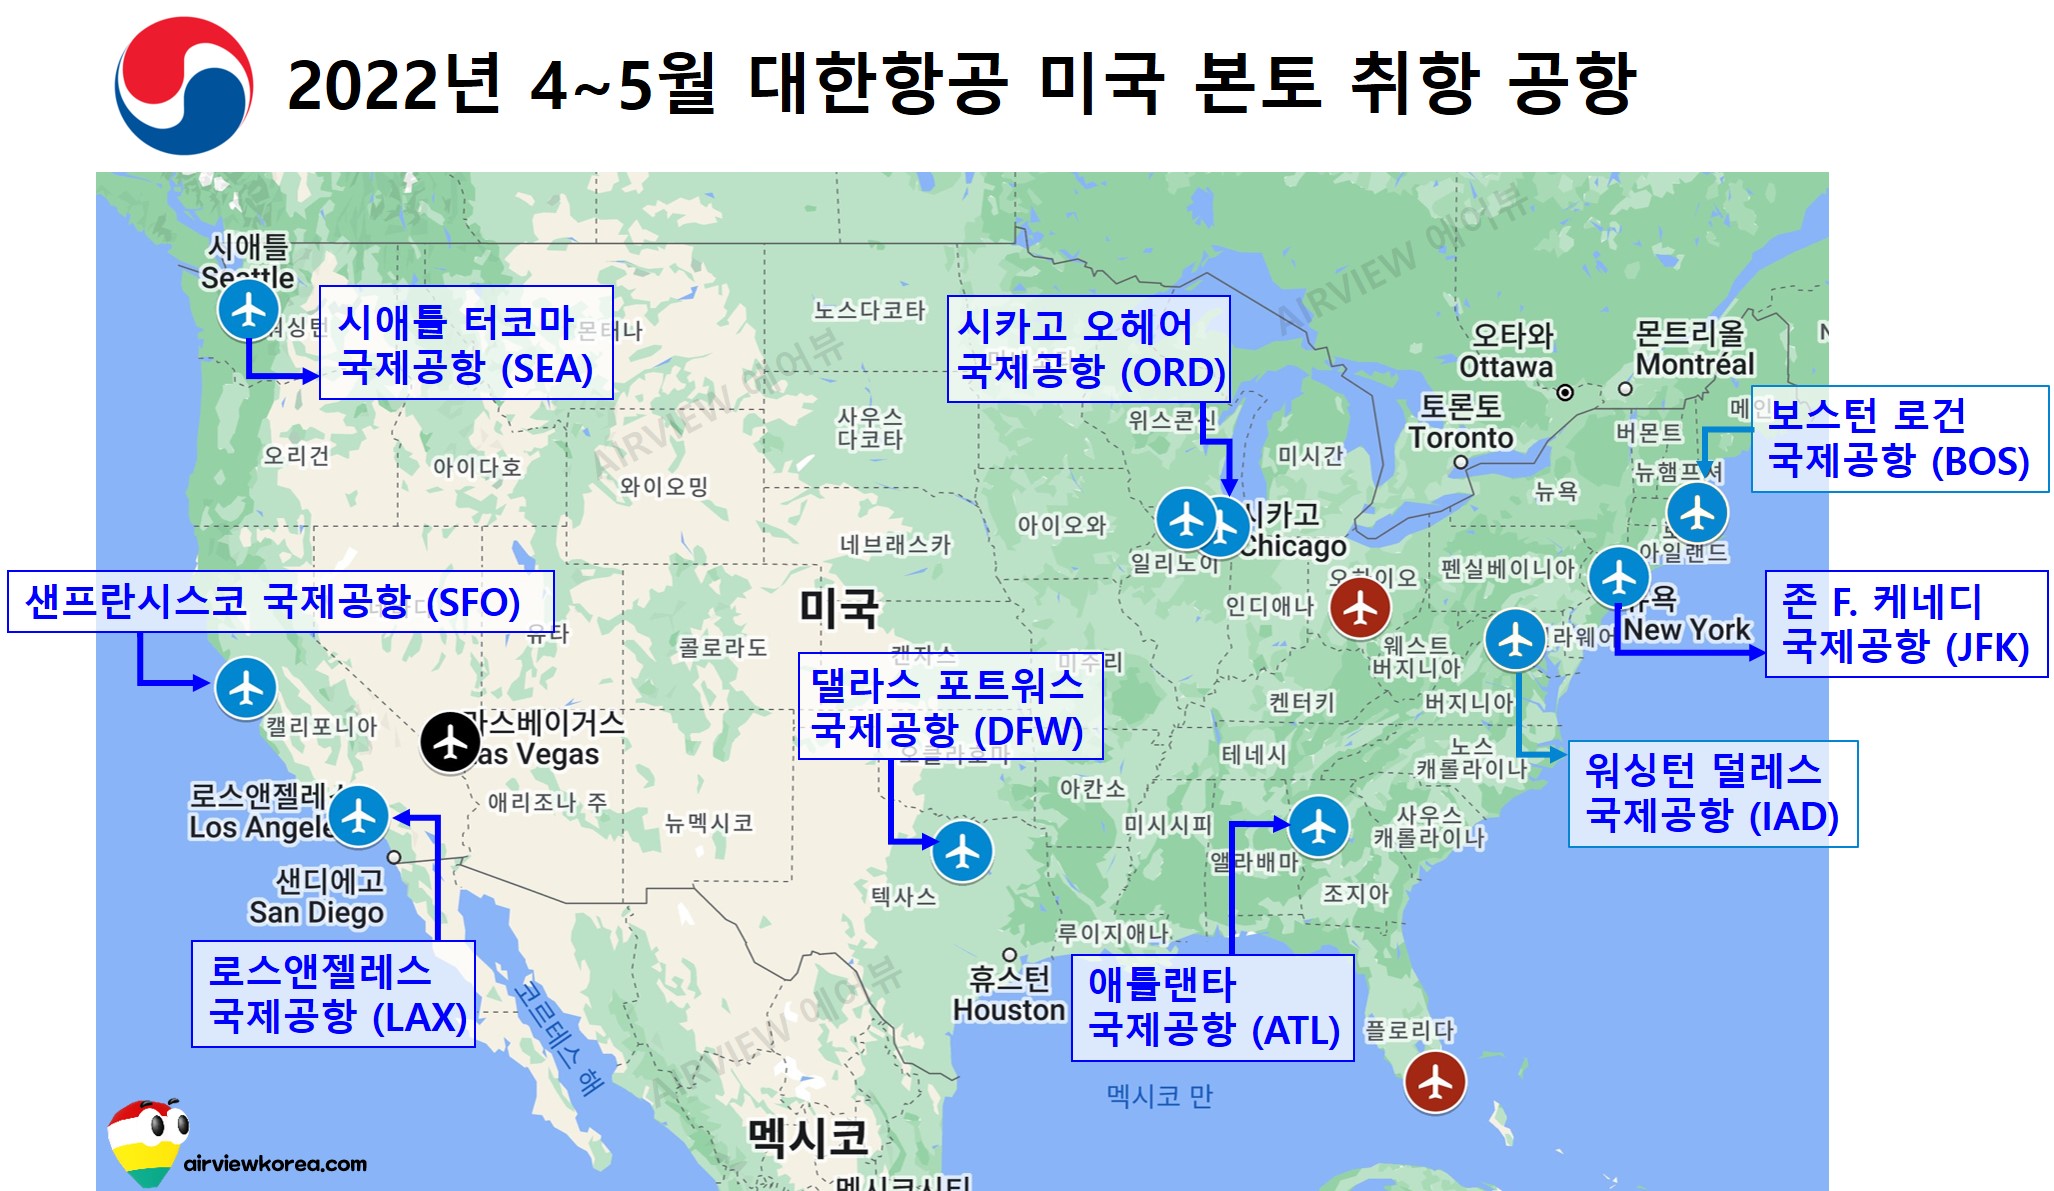 2022년 4월 5월 두달간 대한항공이 취항하는 미국 본토 내 취항 공항의 위치를 표시한 지도